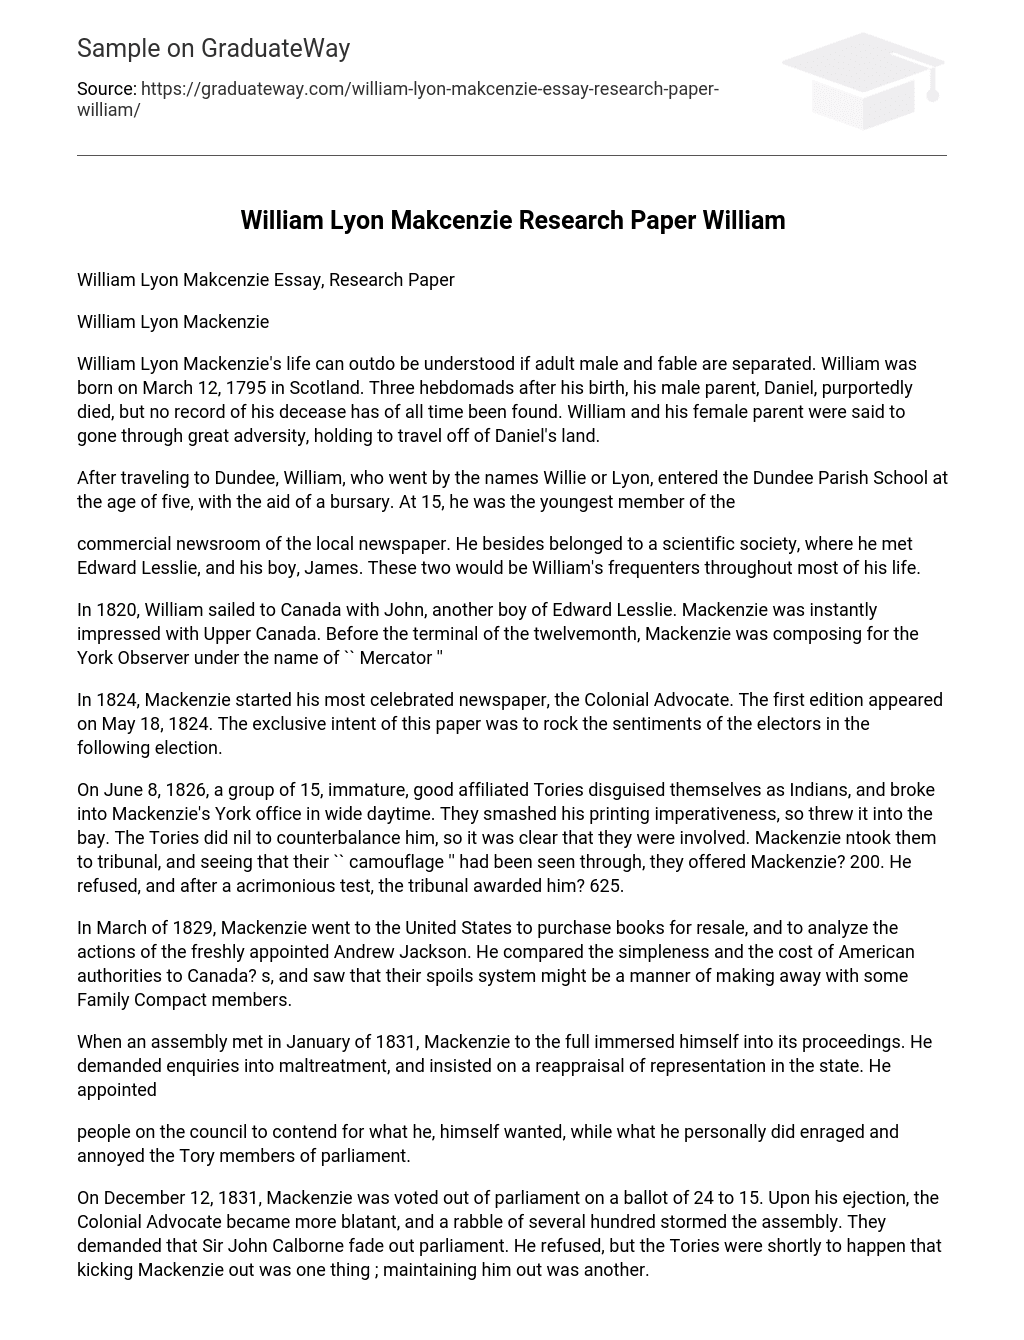 William Lyon Makcenzie Research Paper William